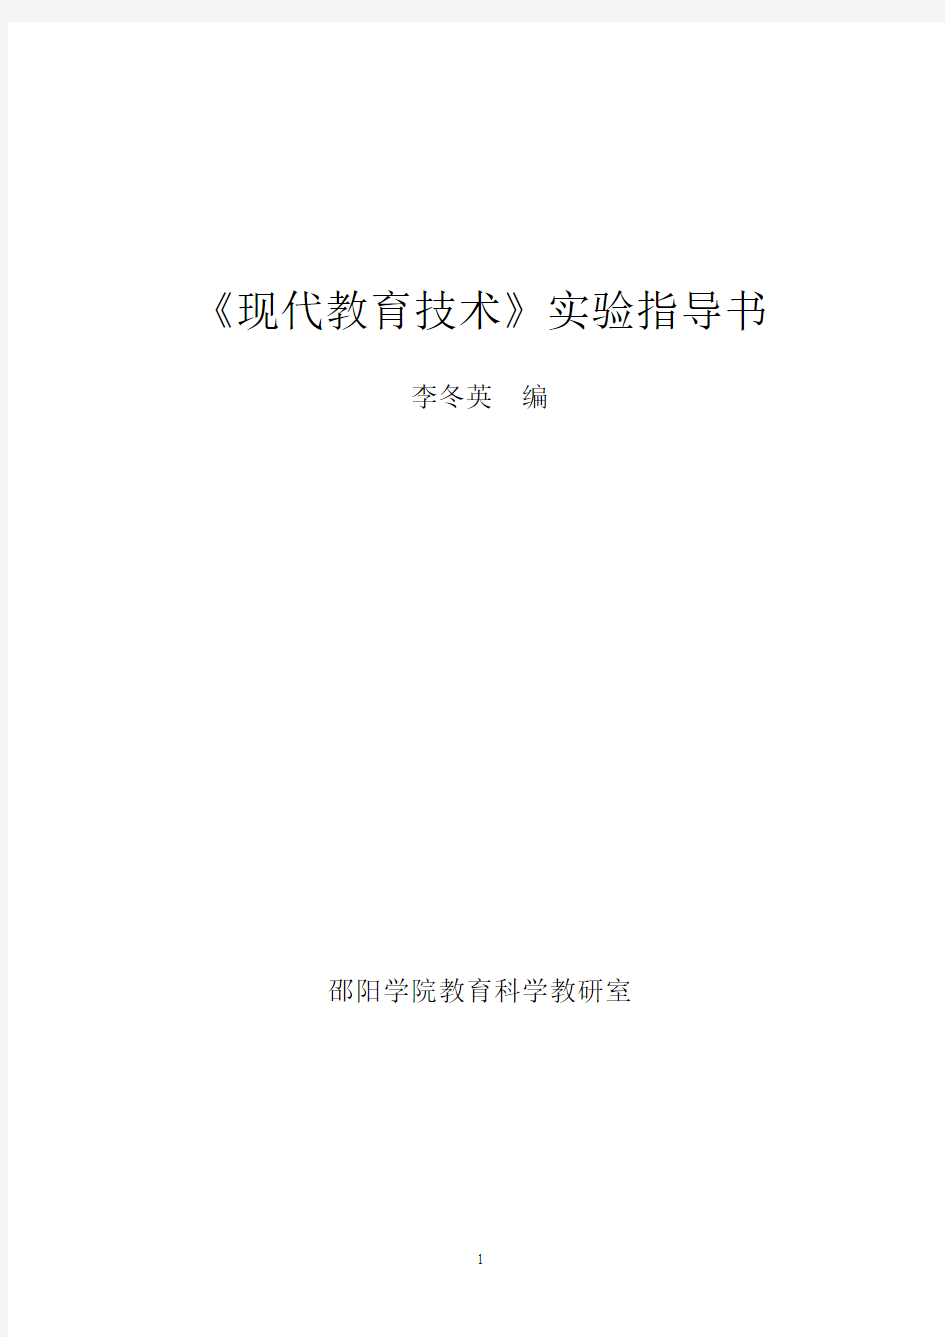 现代教育技术实验指导书(李冬英)(091126)